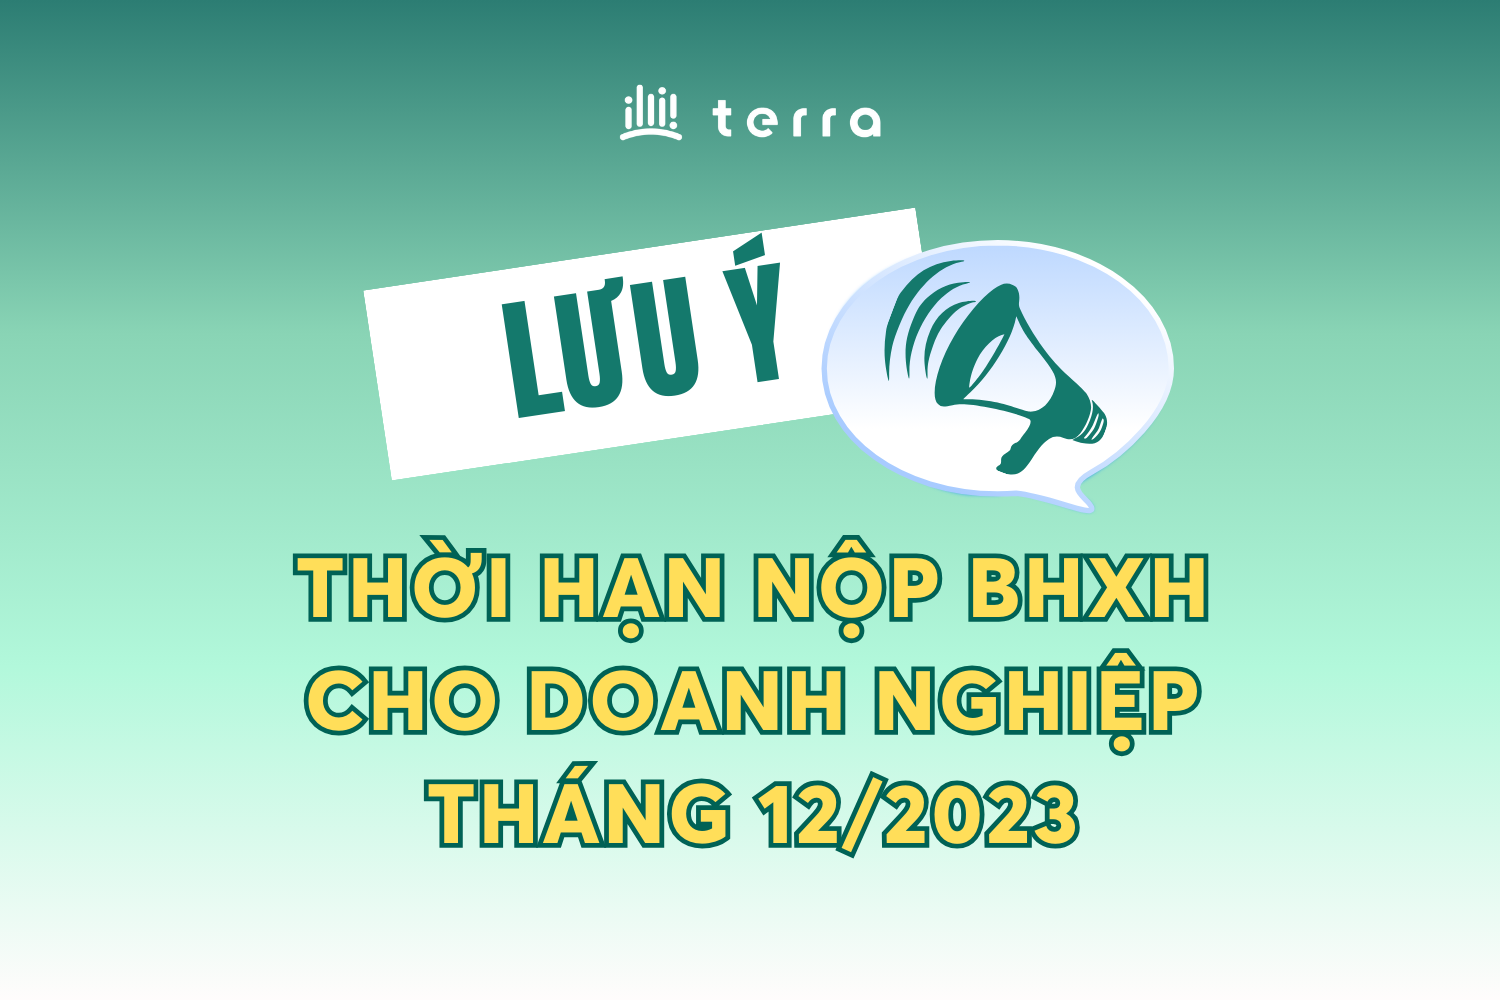 (Tiếng Việt) Lưu ý thời hạn nộp BHXH cho doanh nghiệp tháng 12/2023